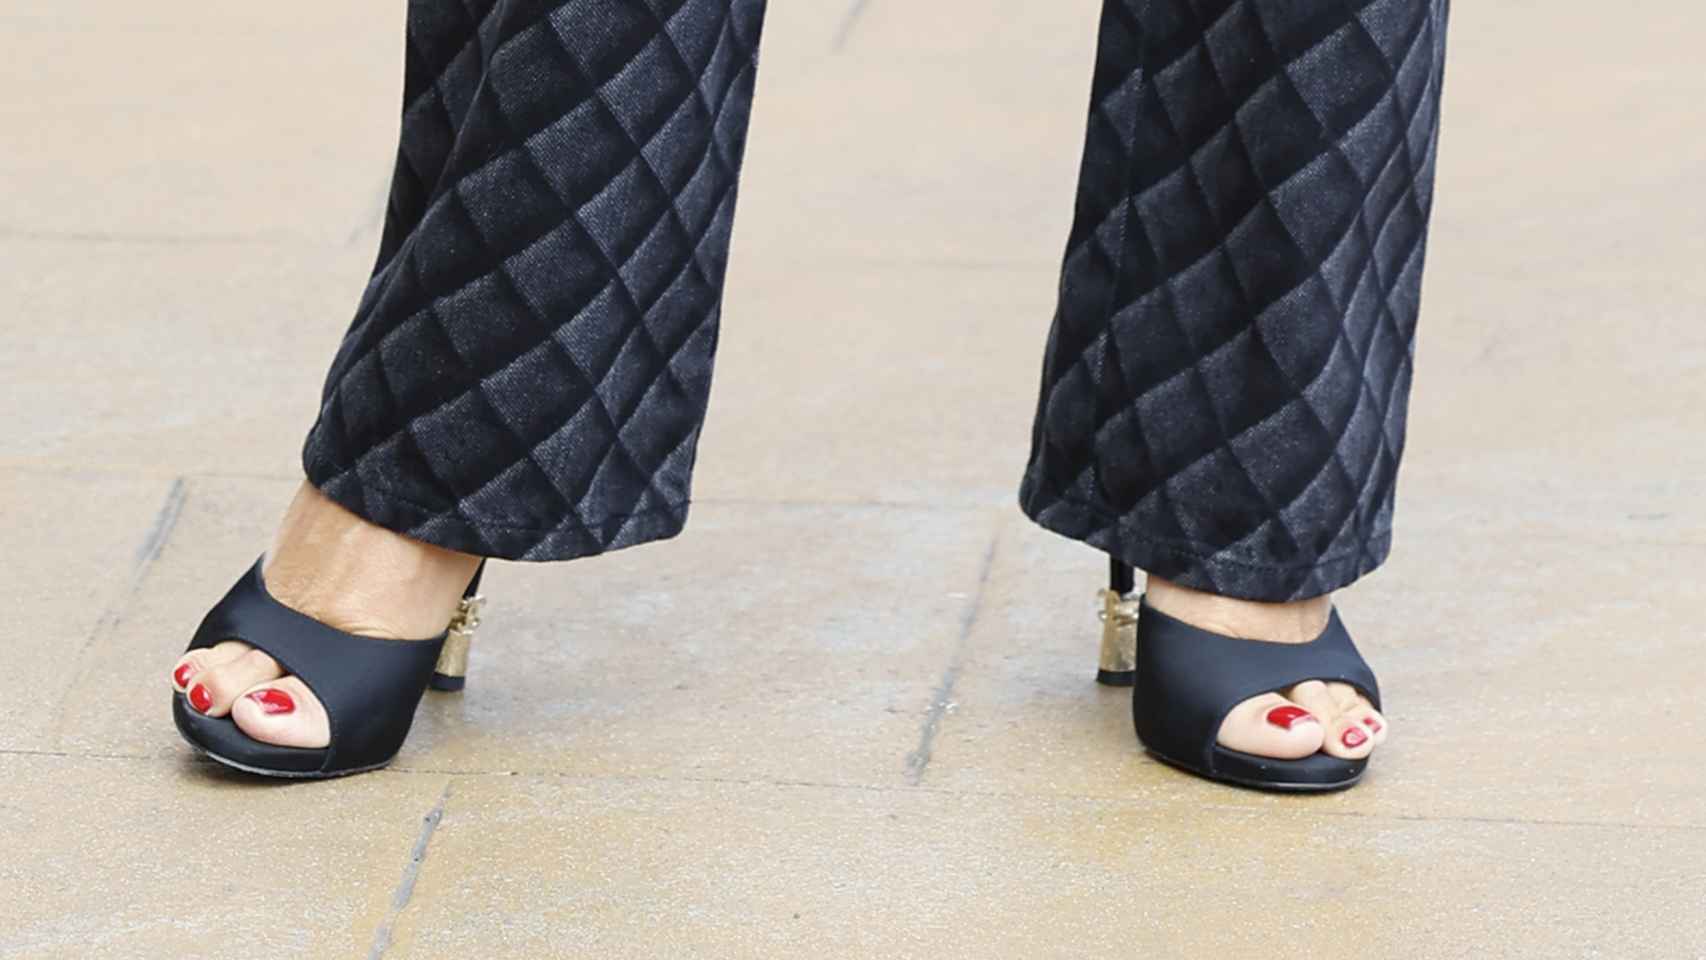 Detalle de la pedicura de Penélope Cruz y sus sandalias de Chanel.